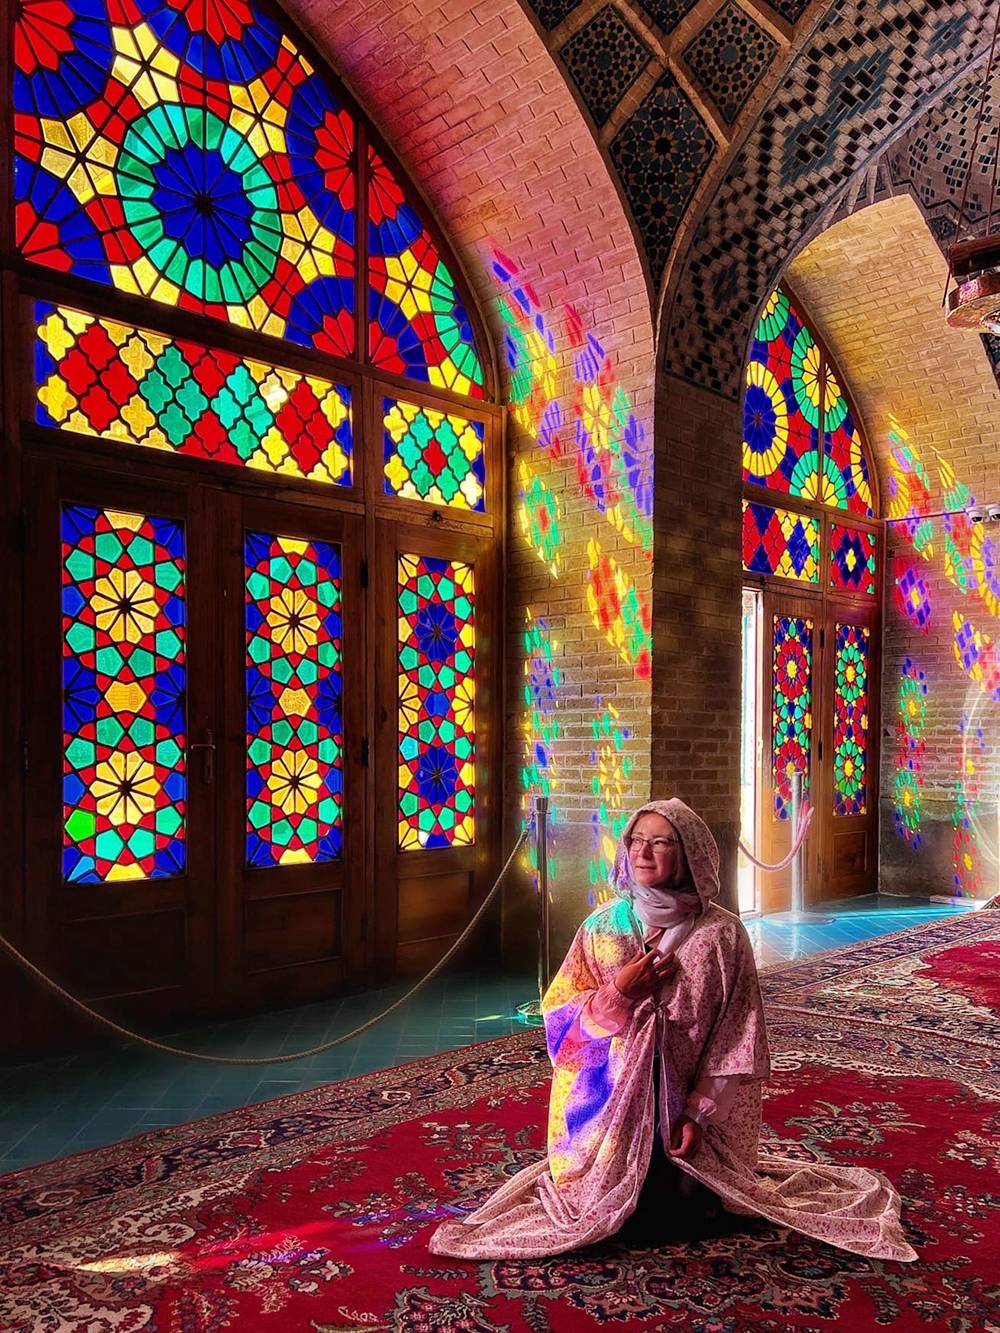 Розовая мечеть запомнилась мне больше остальных в Иране